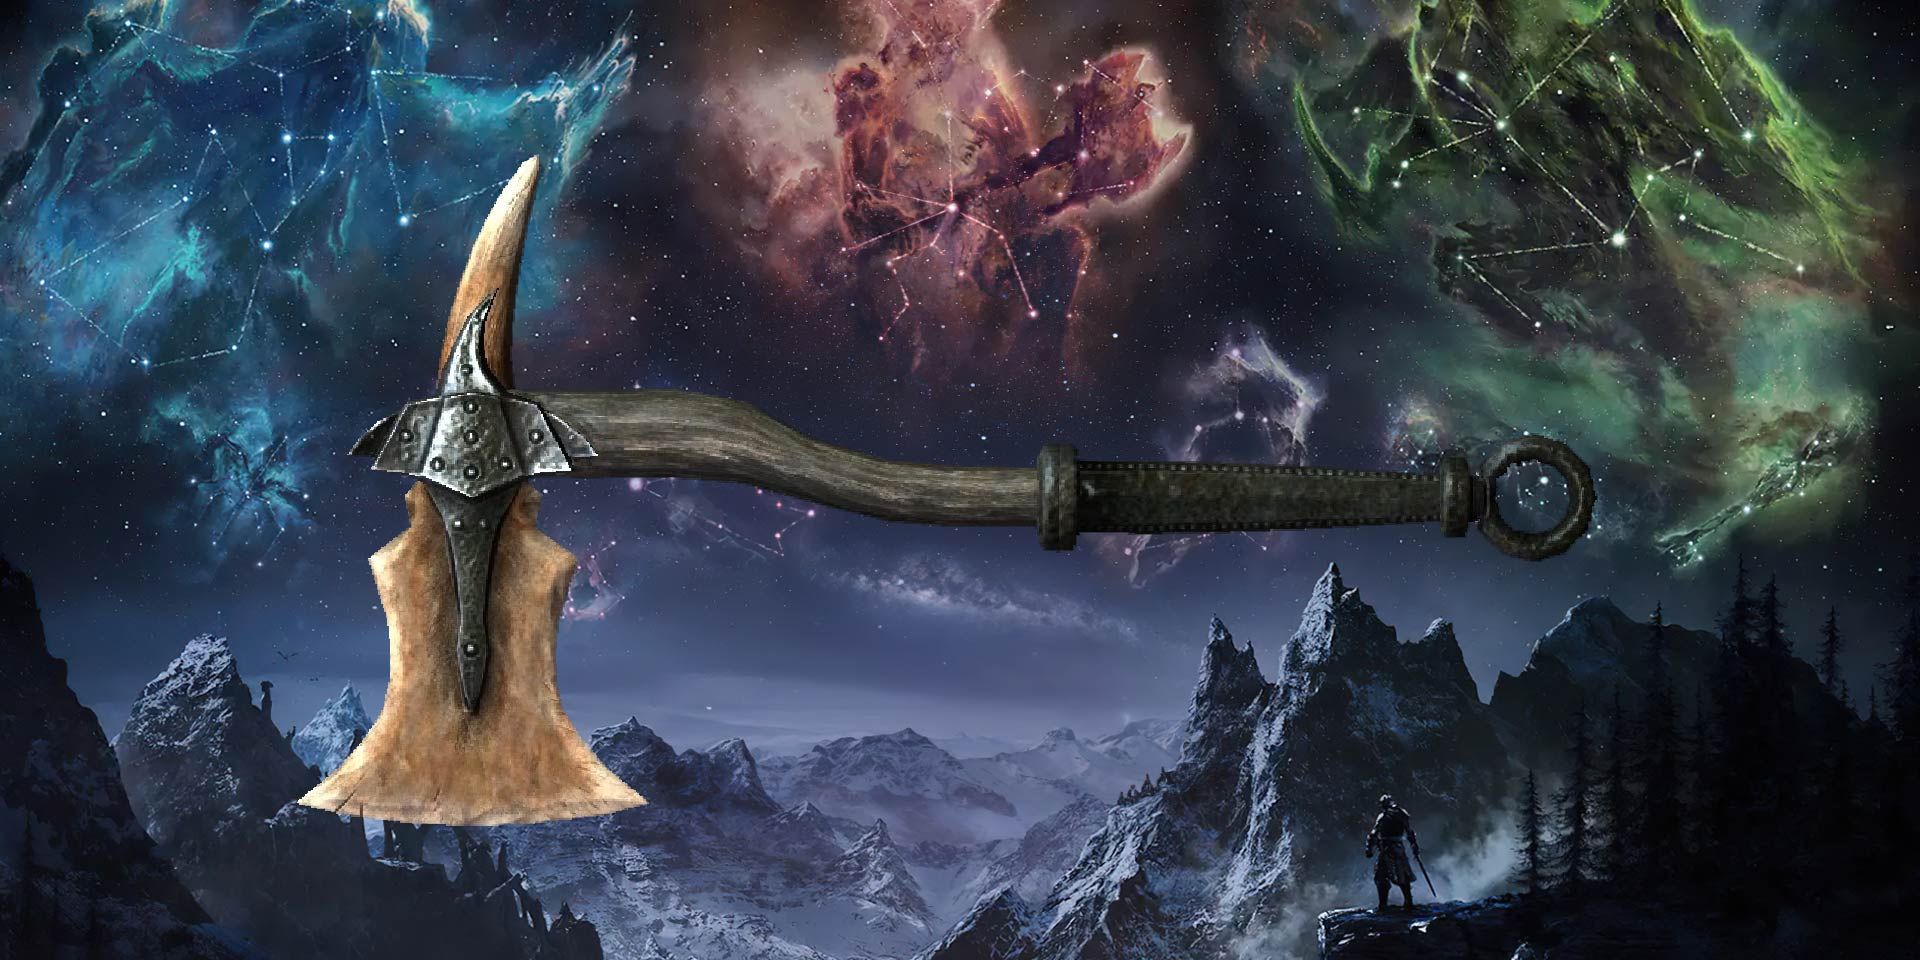 A Dragonbone War Axe among mountains and Elder Scrolls star signs.